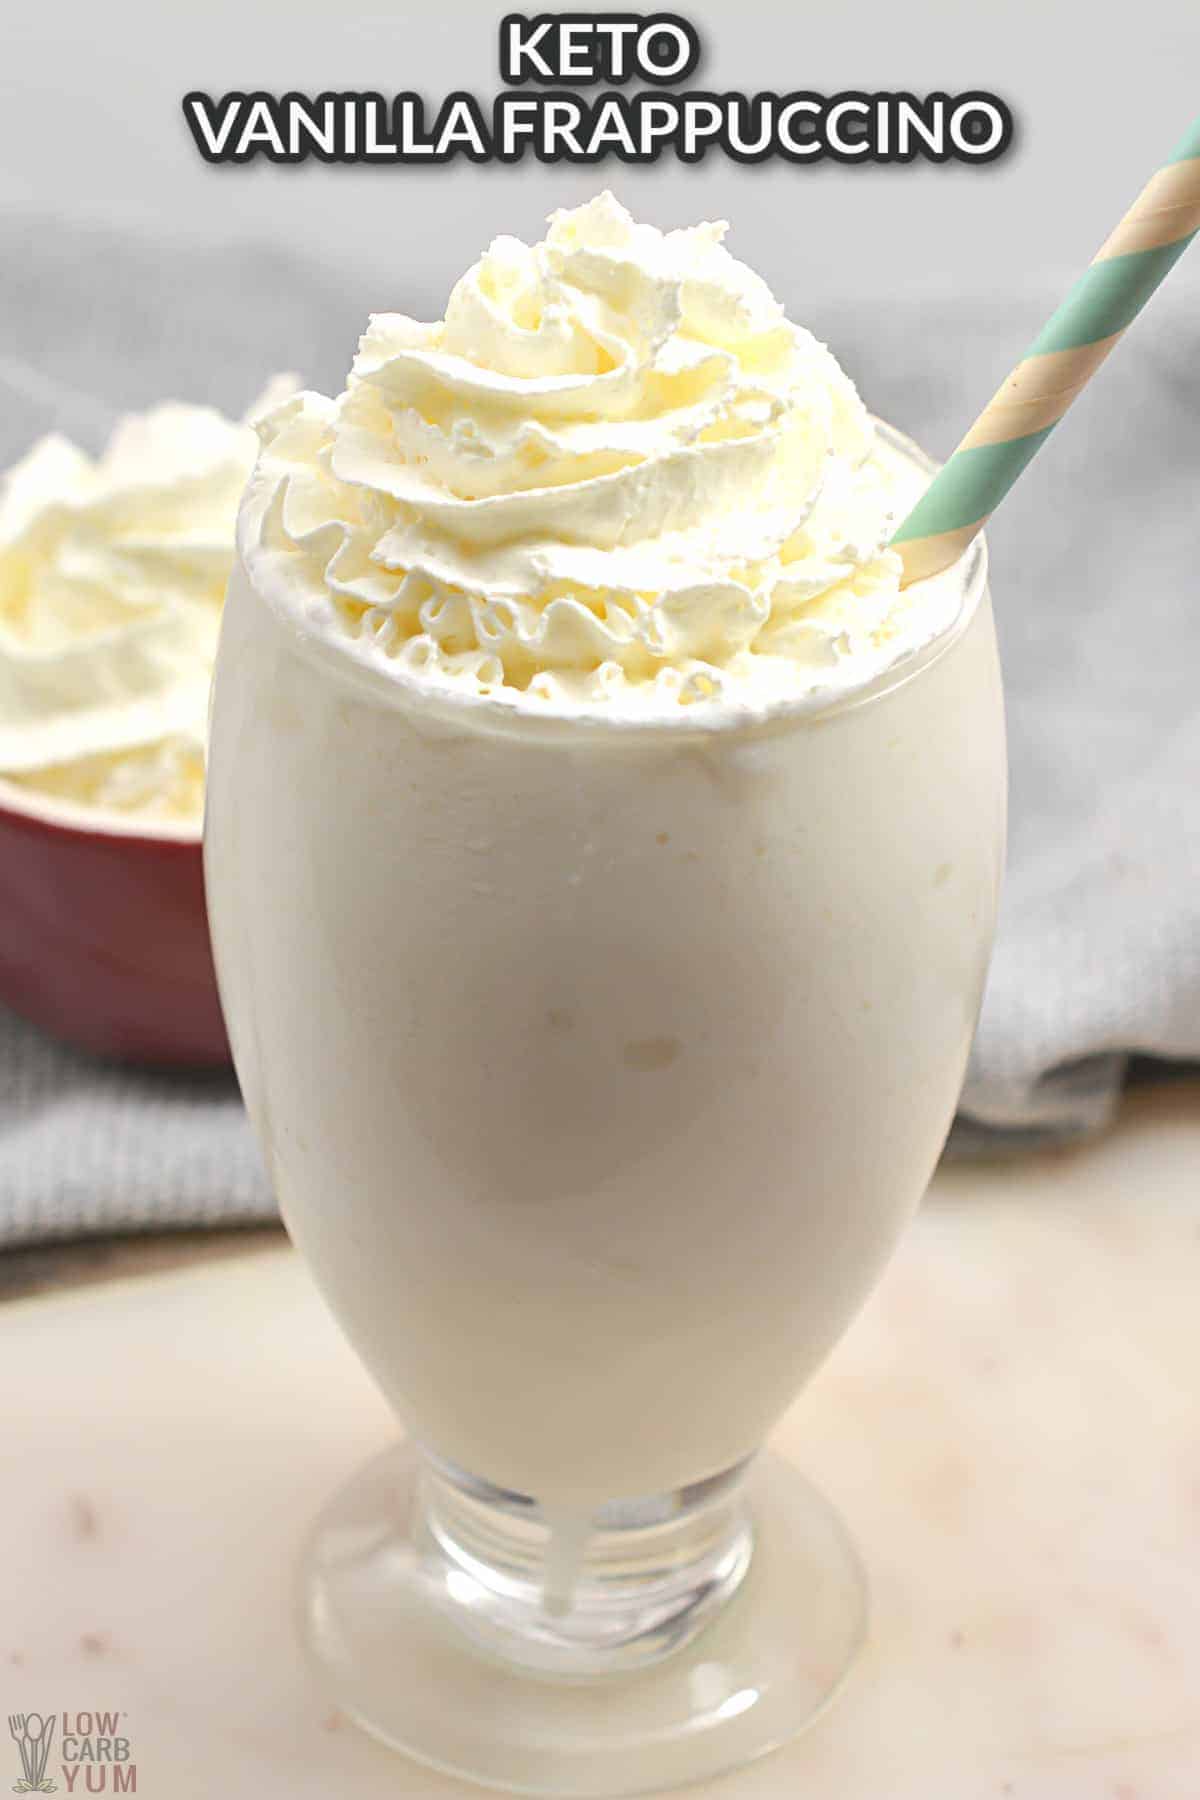 keto vanilla frappuccino with whipped cream.